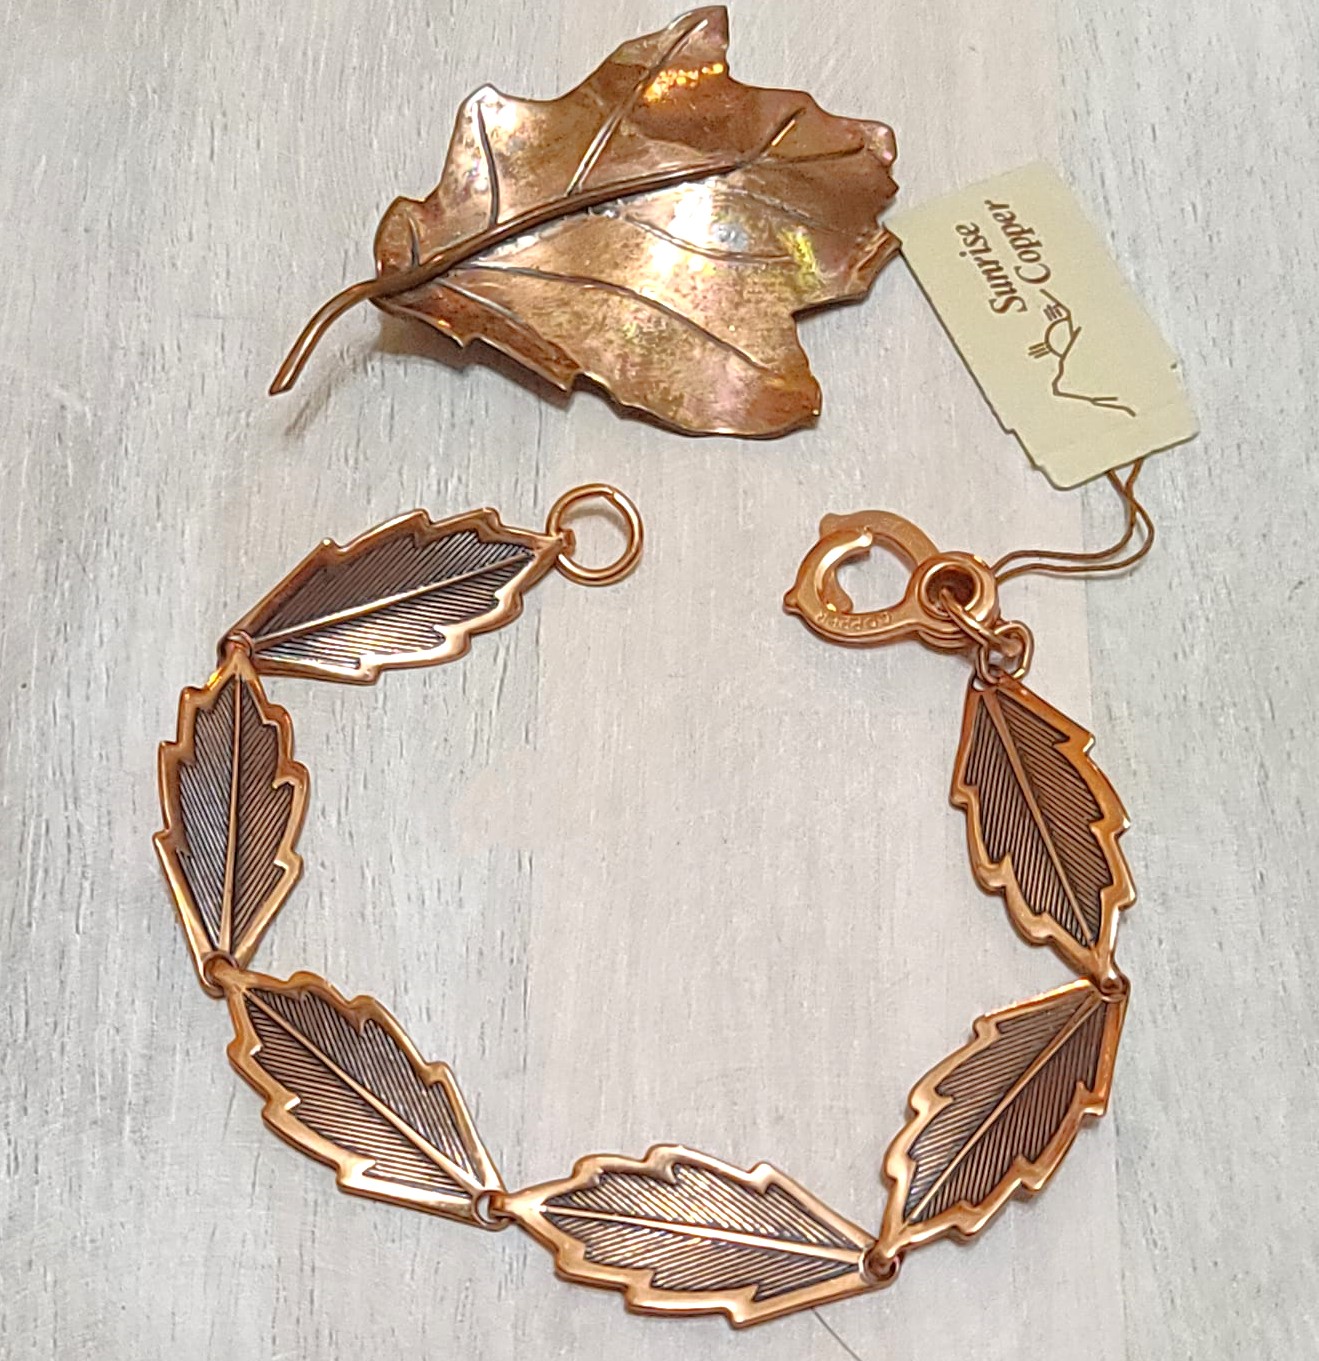 Copper leaf bracelet with matching copper maple leaf pin, vintage set, original tag